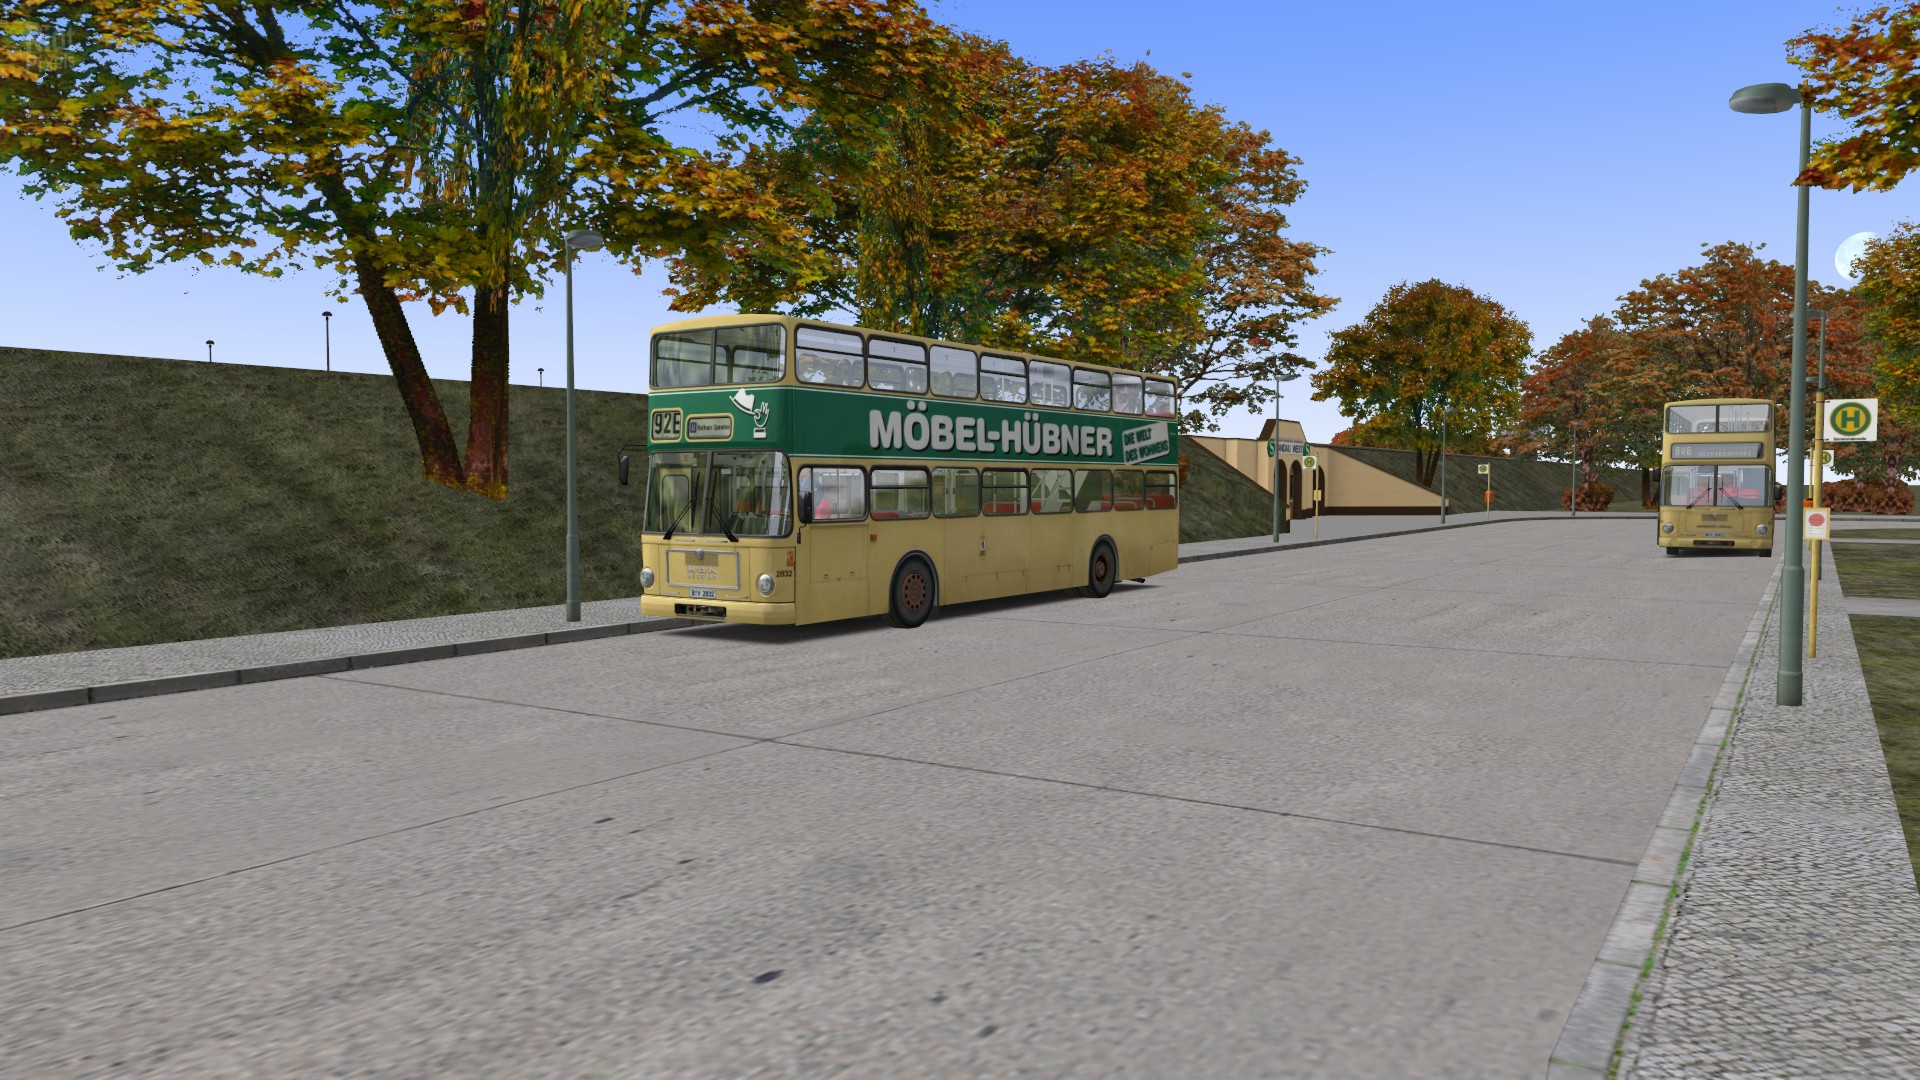 omsi bus simulator